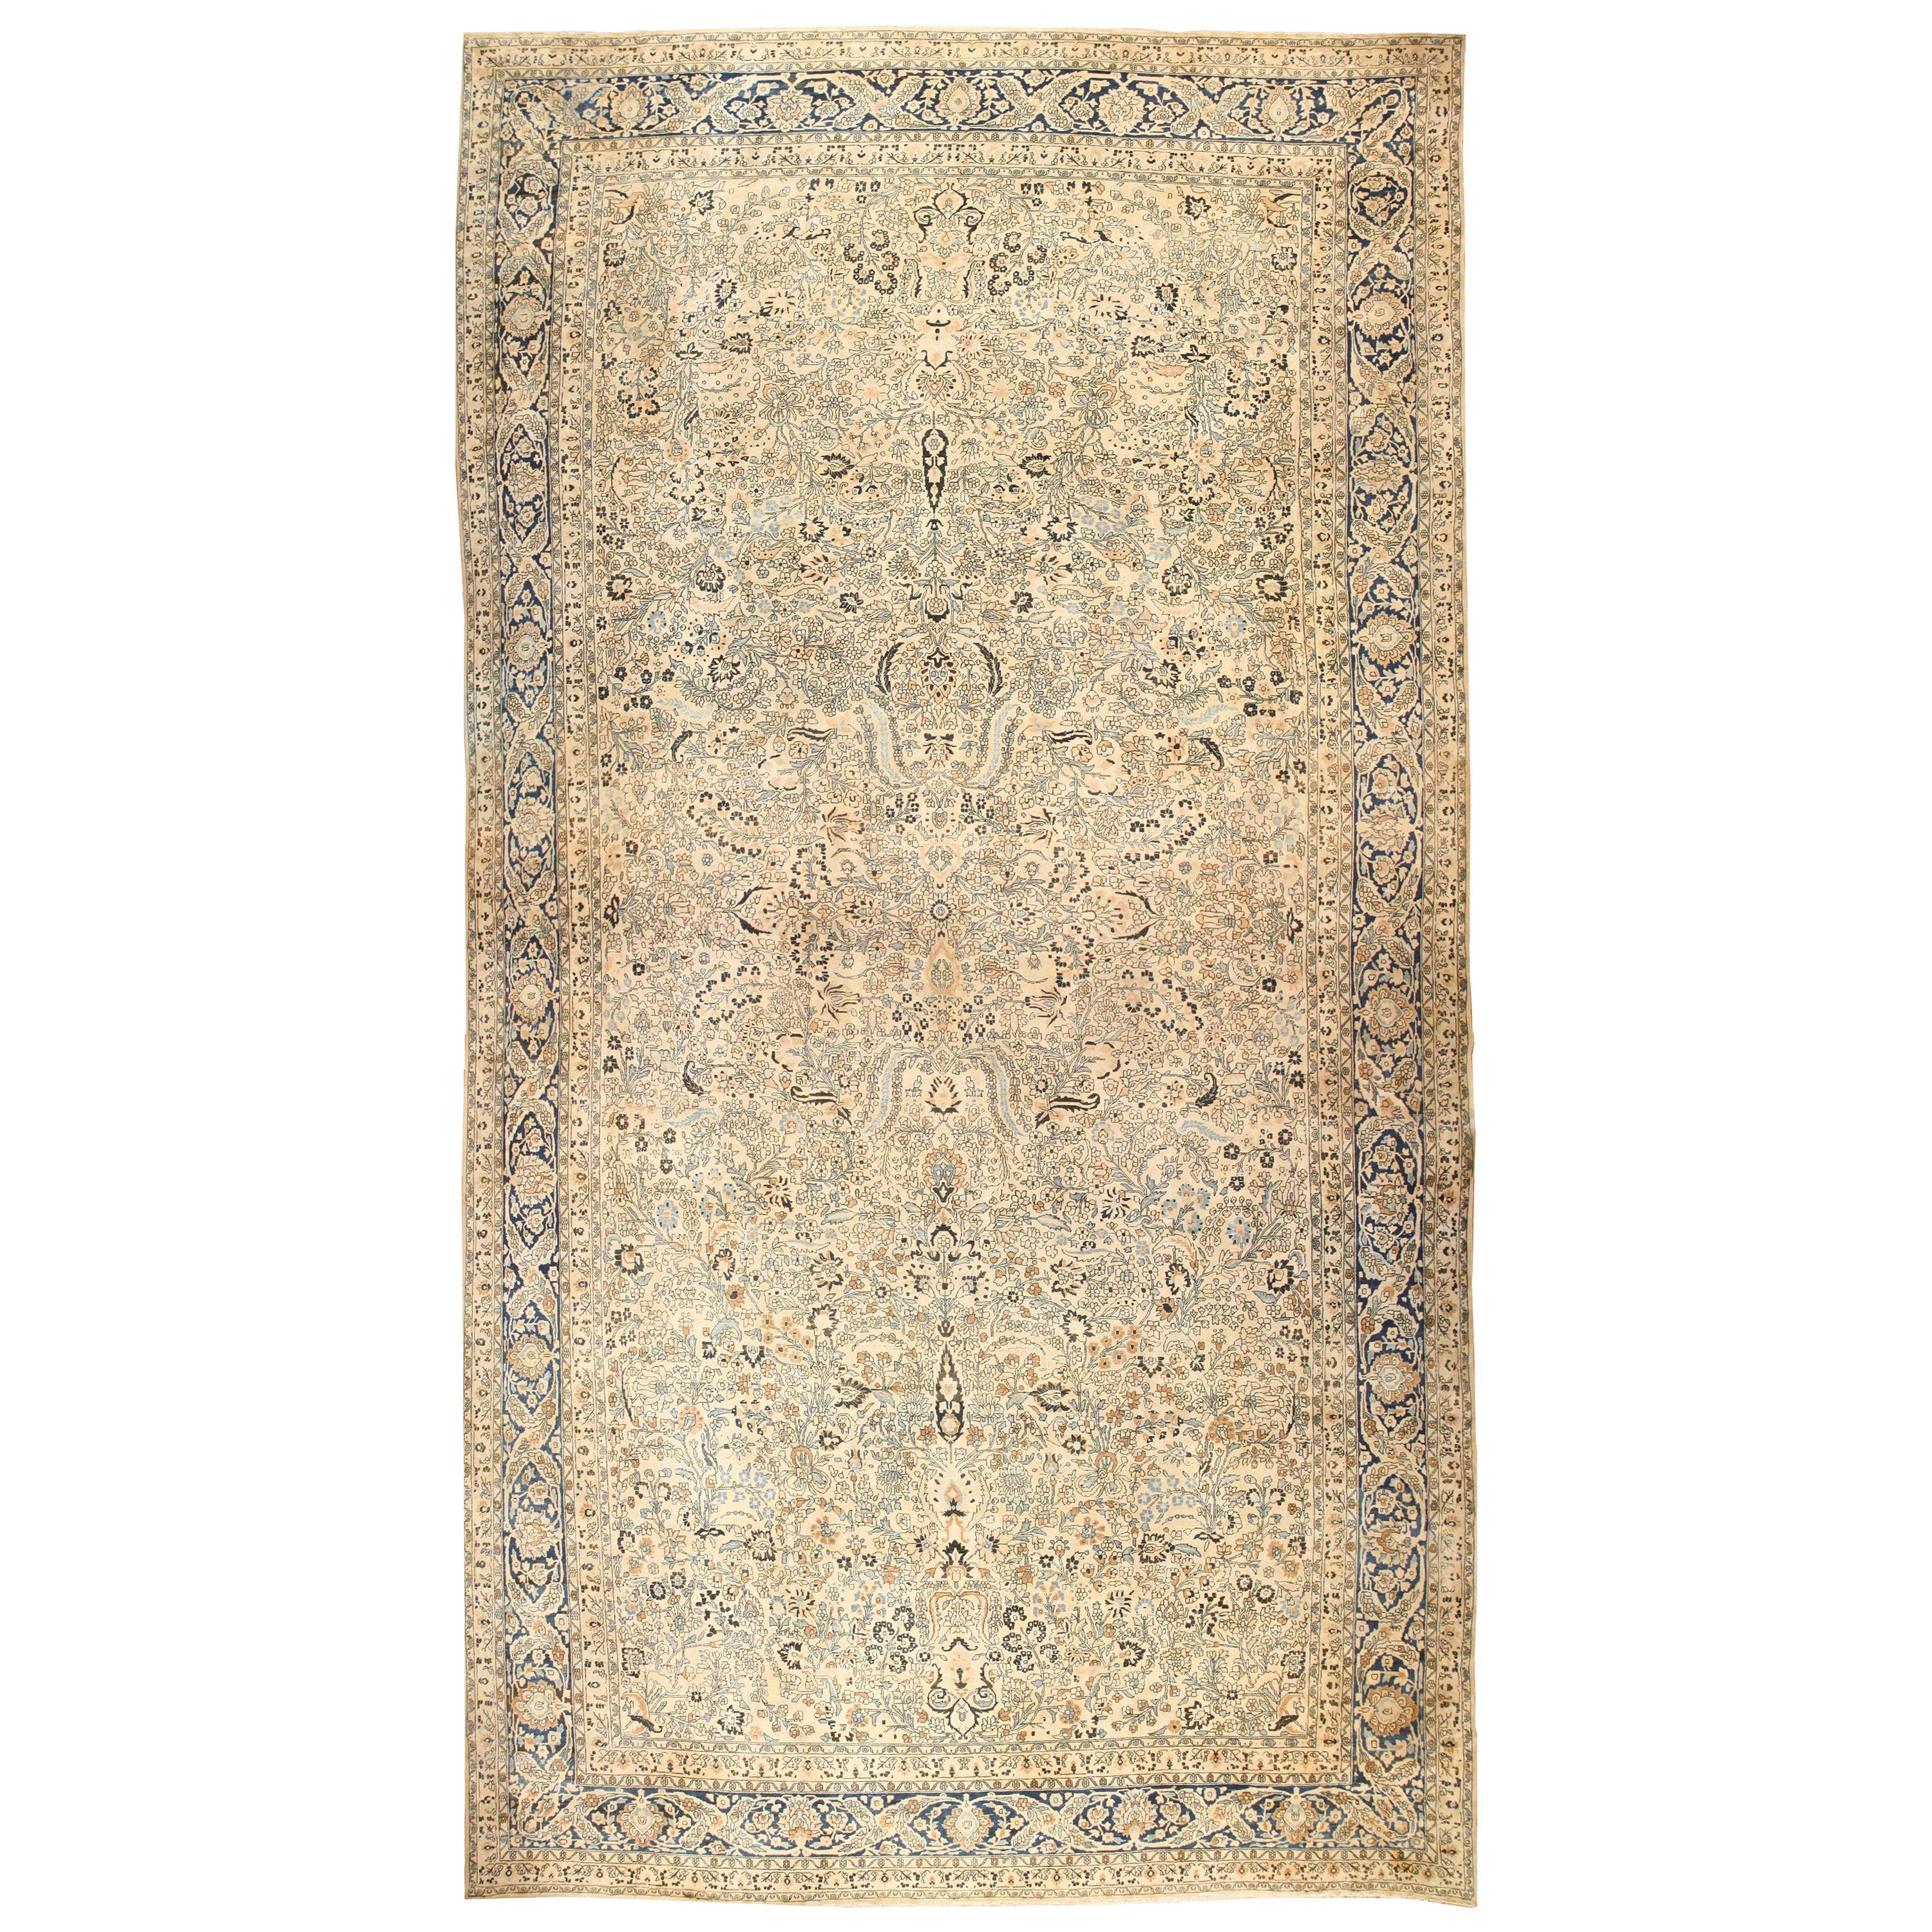 Antiker persischer Khorassan-Teppich. Größe: 14 ft 4 in x 28 ft